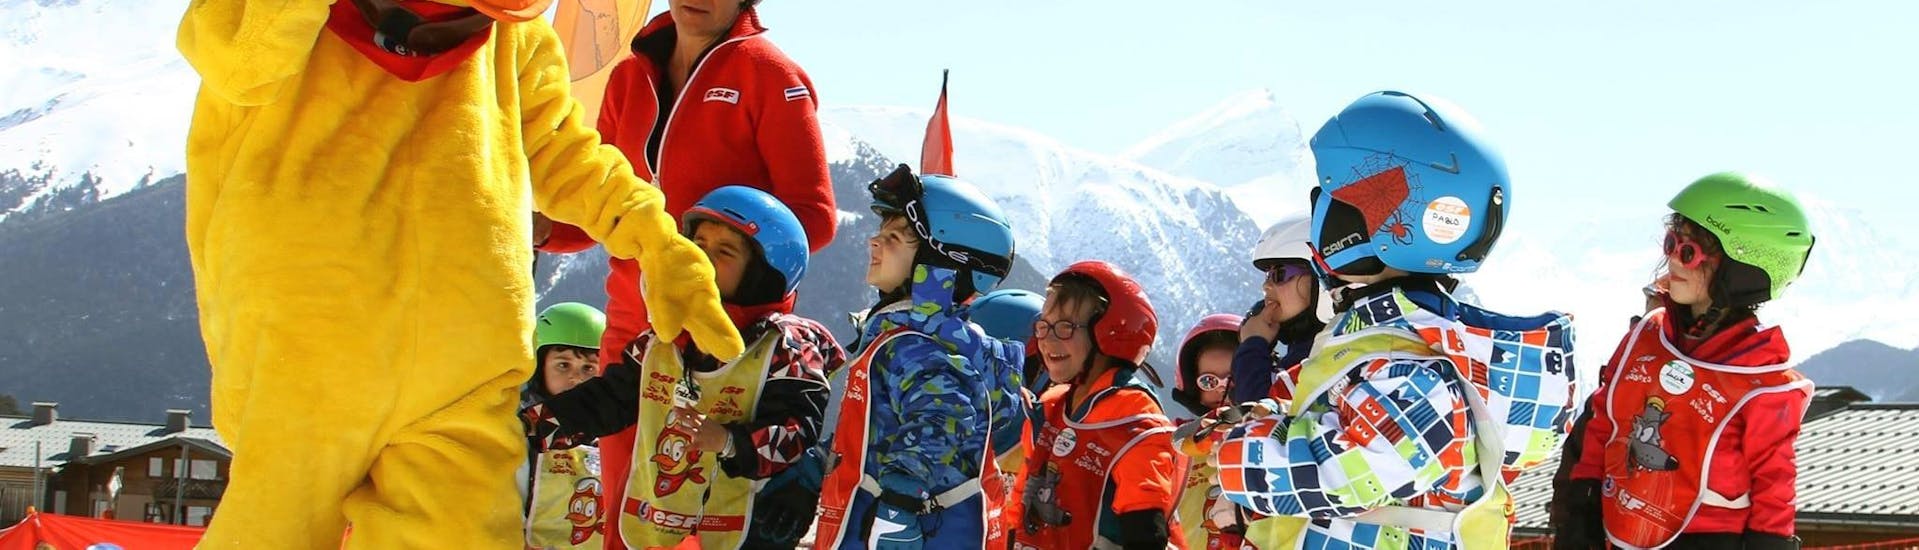 Kinderen leren graag skiën met de mascotte van de skischool ESF Aussois tijdens hun kinderskilessen "Sneeuwschool" (2½-3 j.)